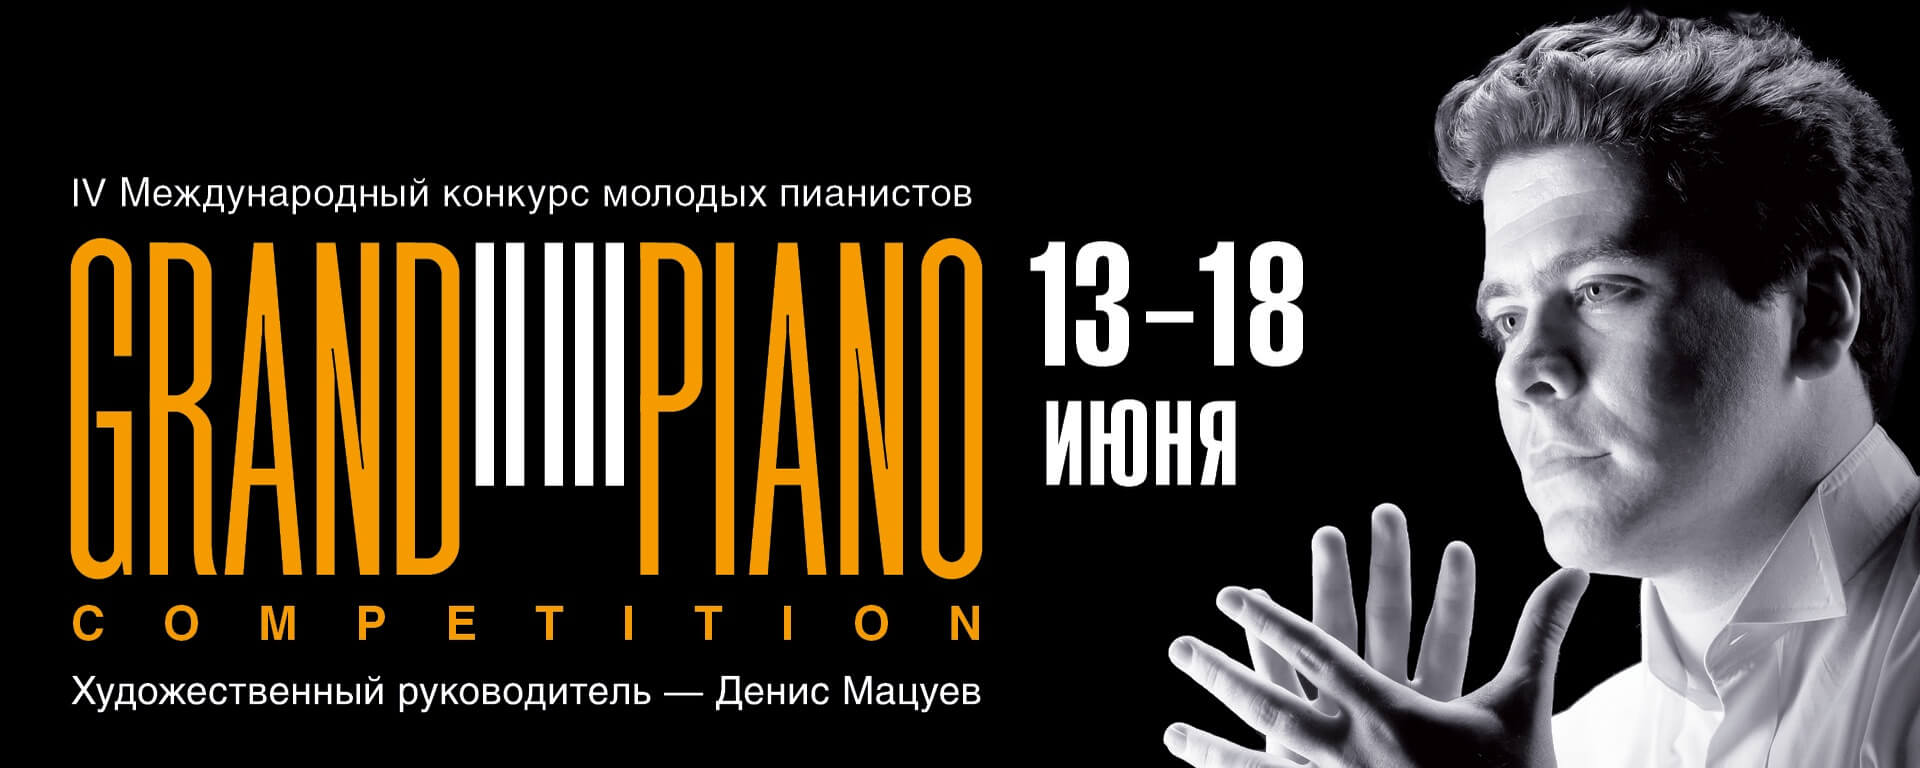 Объявлены имена участников IV Международного конкурса молодых пианистов Grand Piano Competition, который пройдет в Москве с 13 по 18 июня